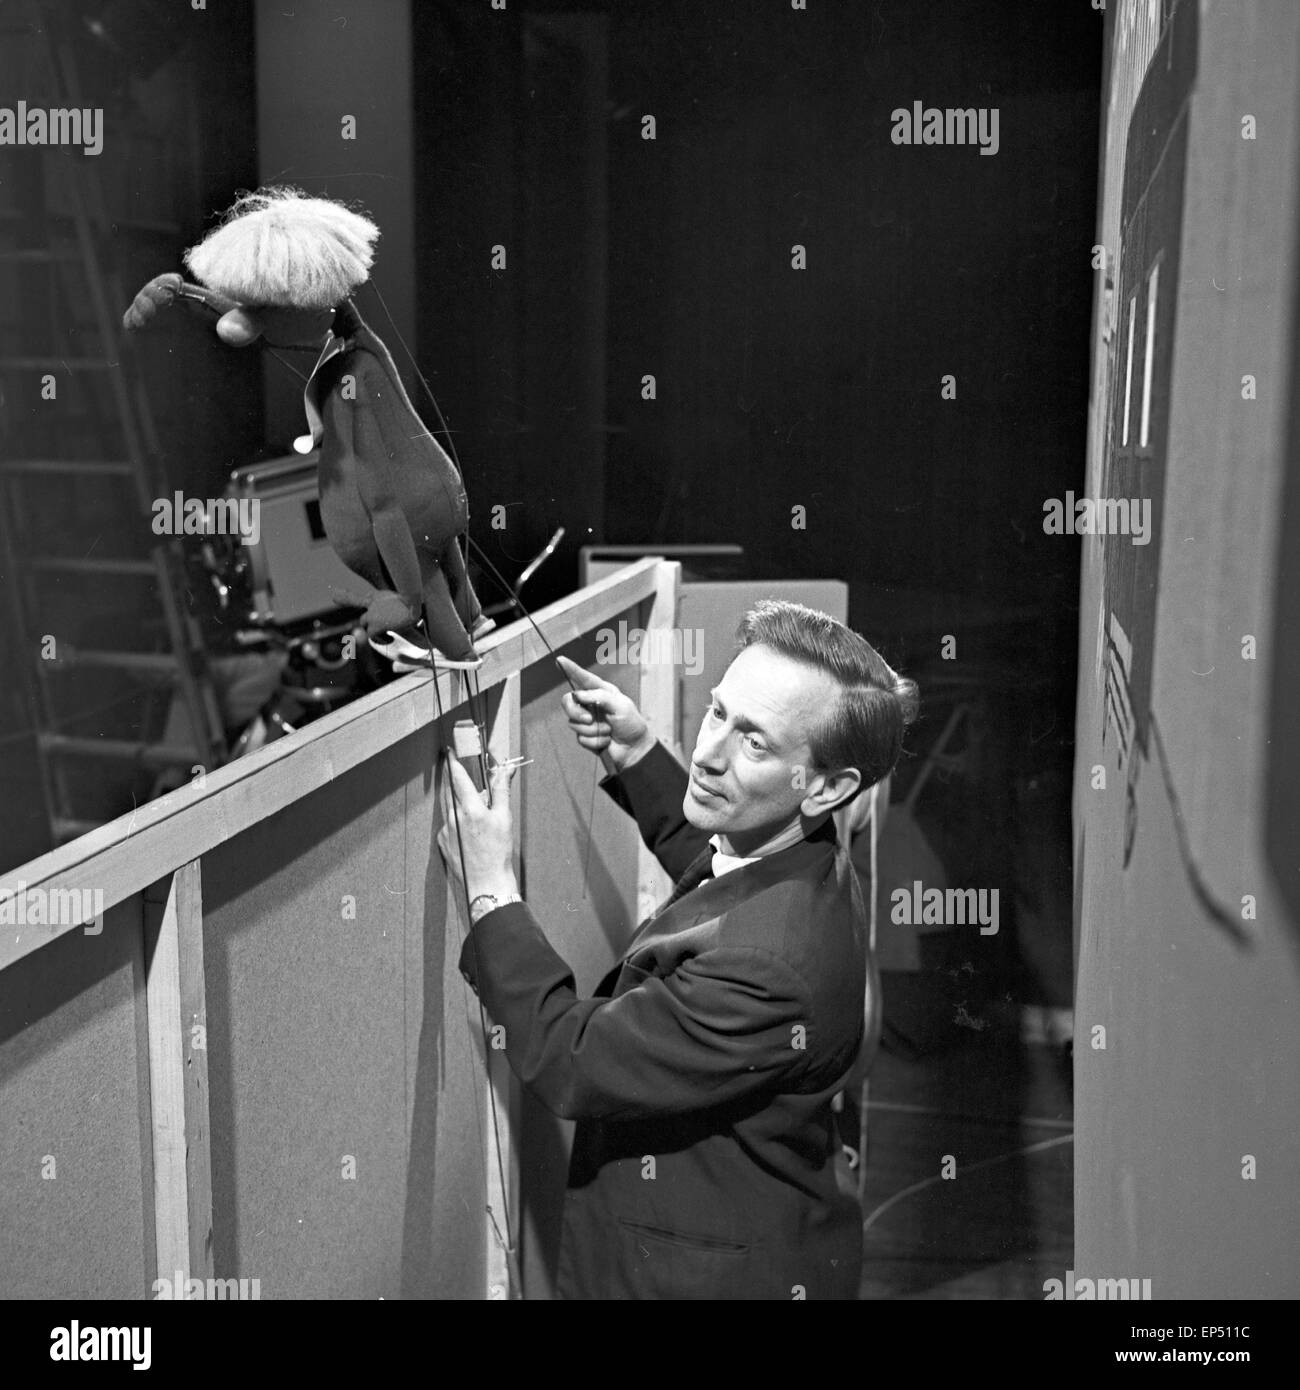 Puppen und Puppenspeiler in einem Marionettentheater in Hamburg, Deutschland 1960er Jahre. Puppets and puppeteers at a Hamburg p Stock Photo